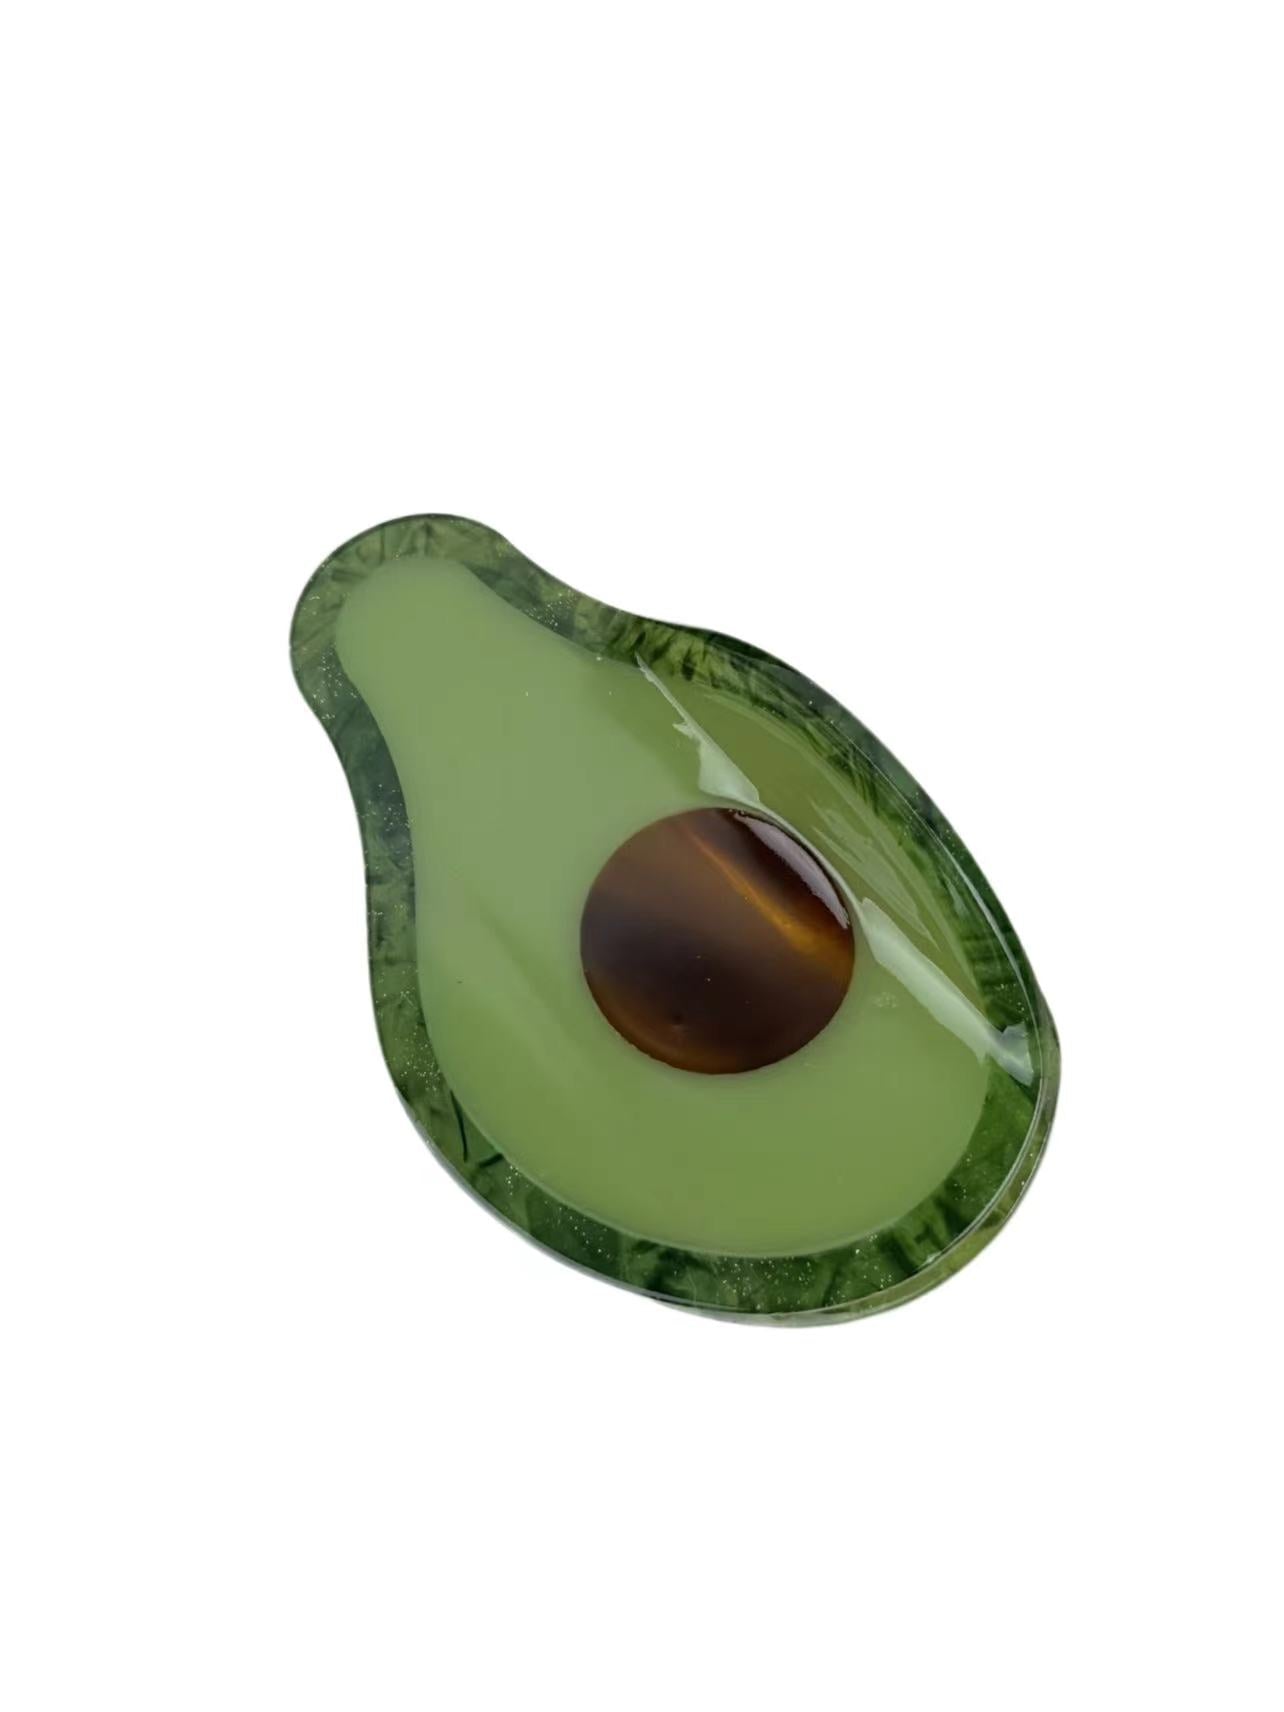 a hair claw clip made in a avocado shape